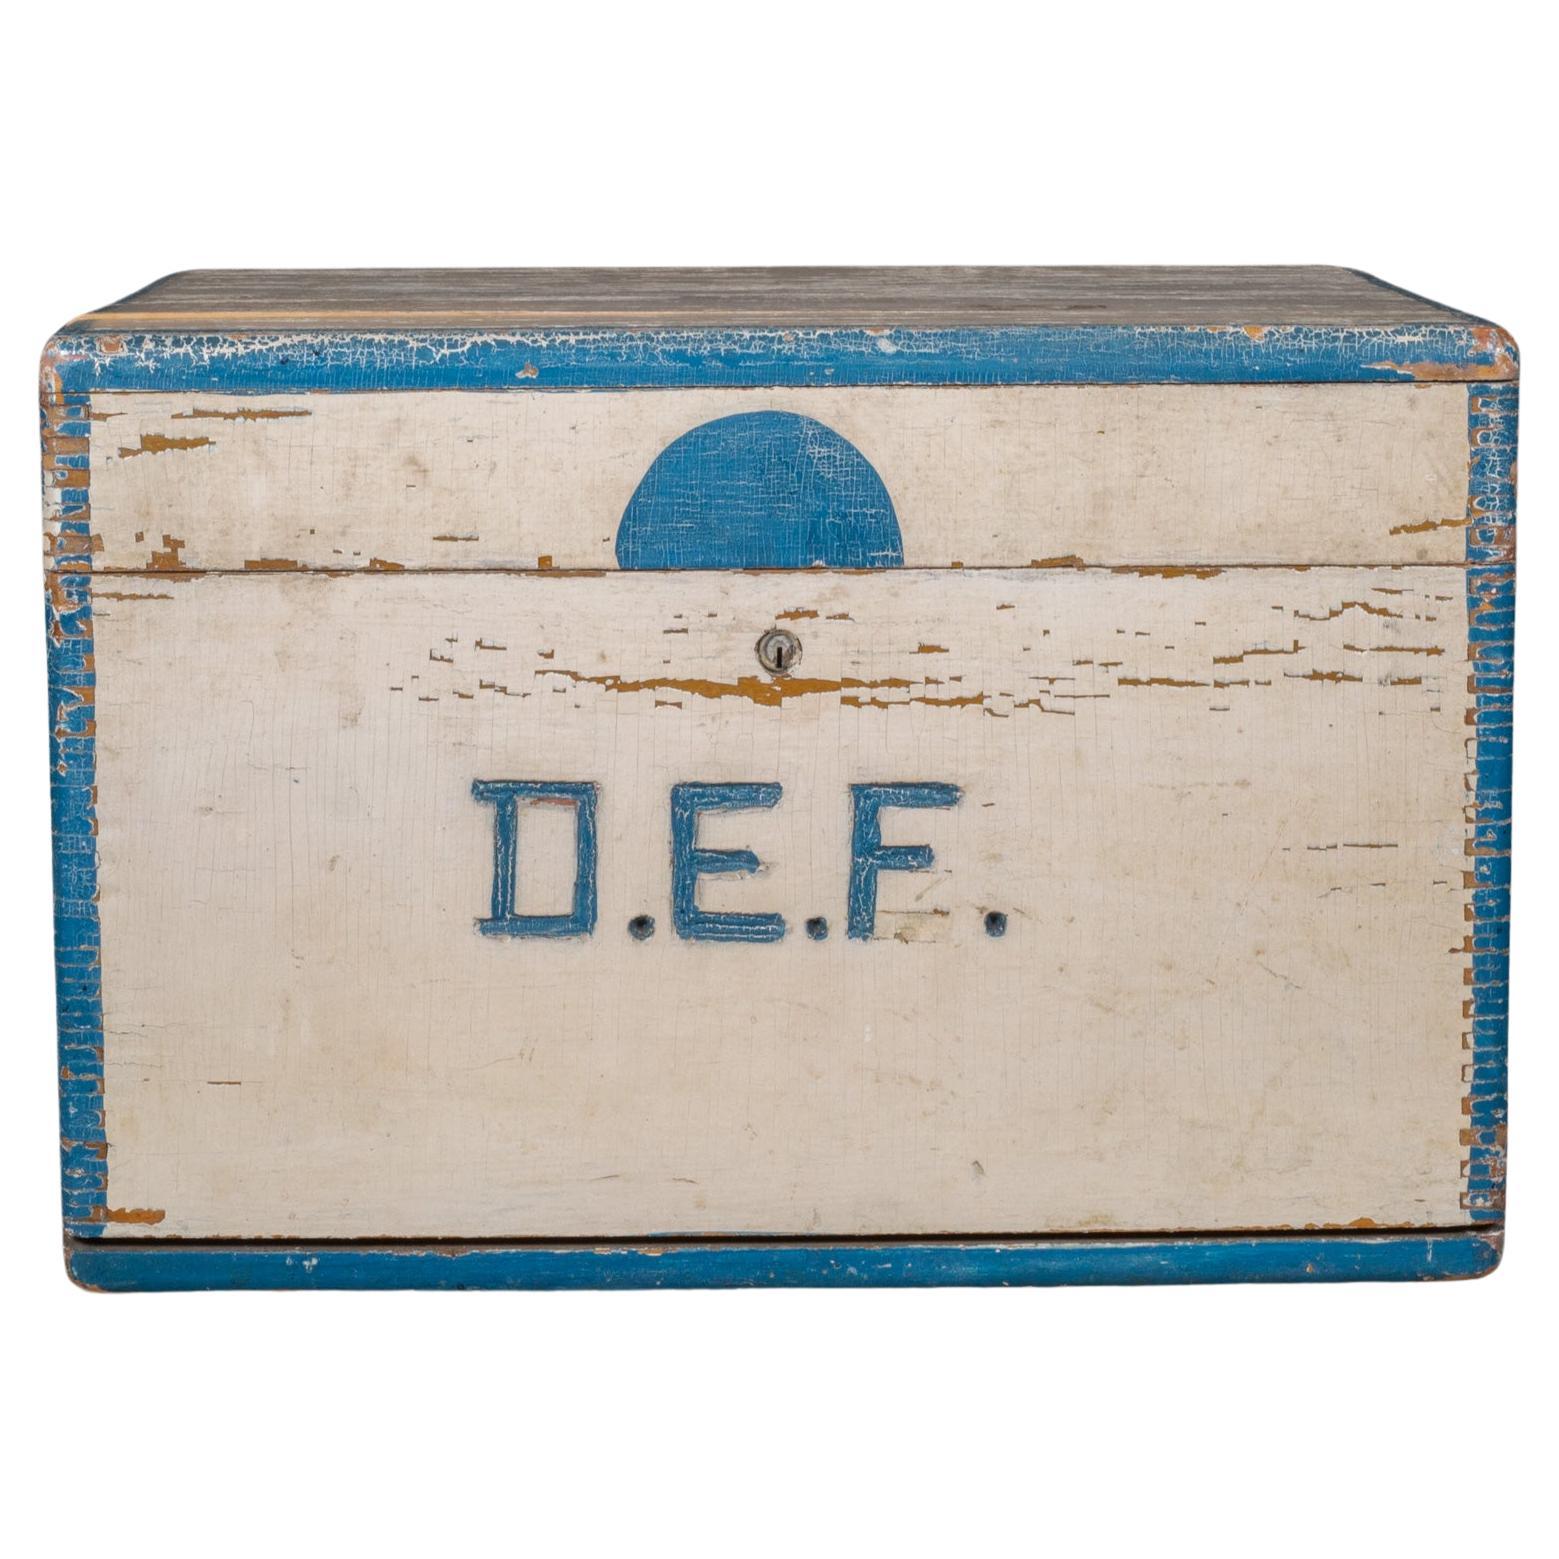 Cassetta degli attrezzi in legno con vassoio interno realizzata a mano con Monogram c.1940 (SPEDIZIONE GRATUITA)